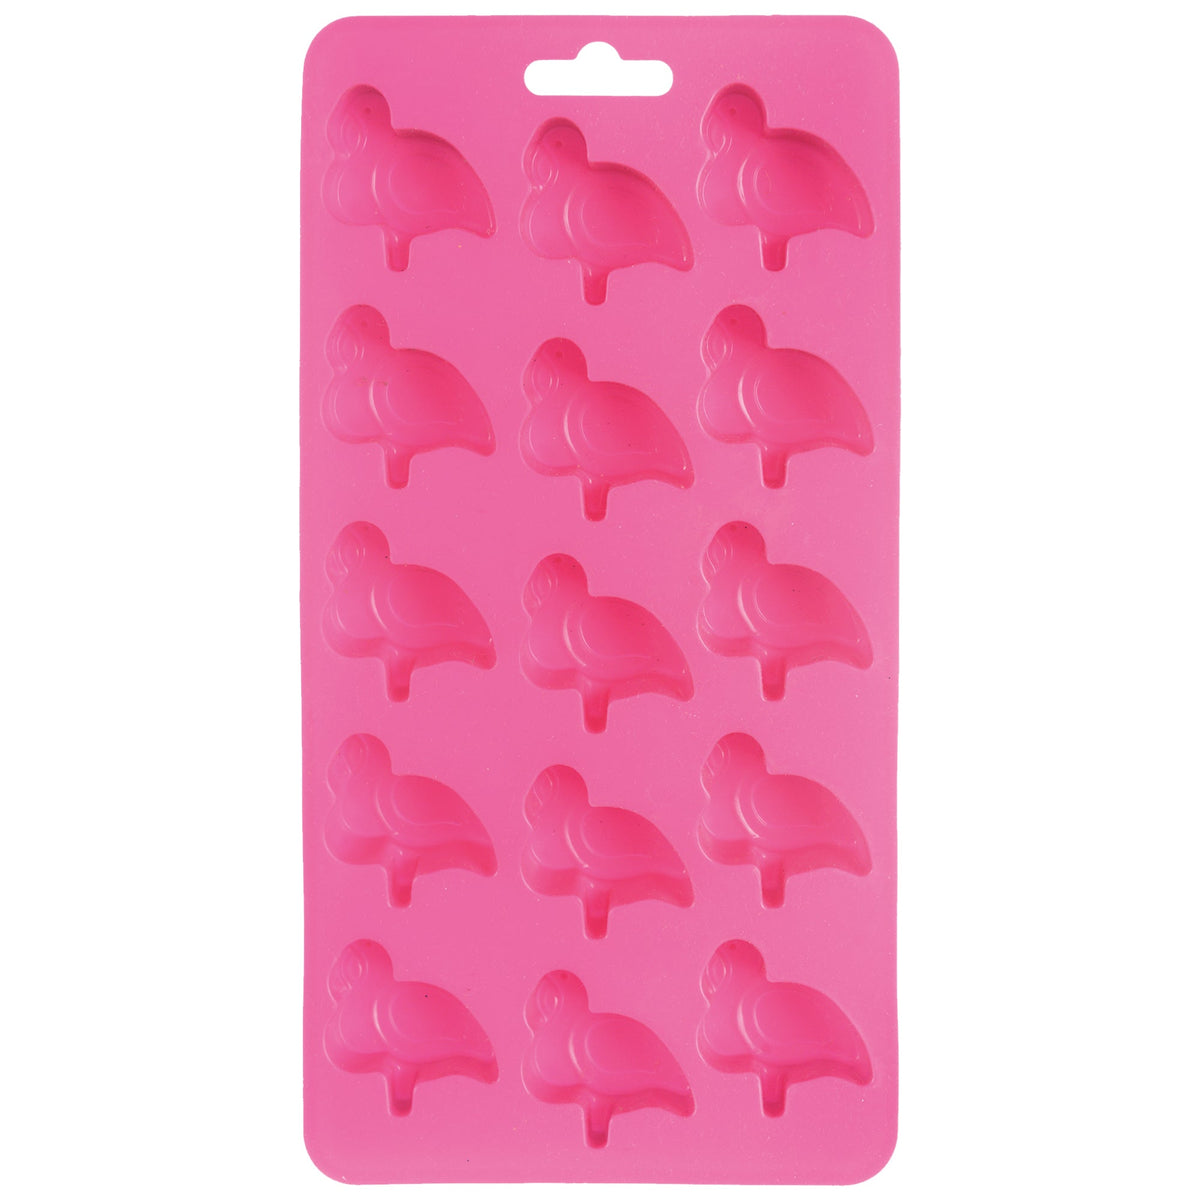 Flamingo 15 Cube Ice Tray